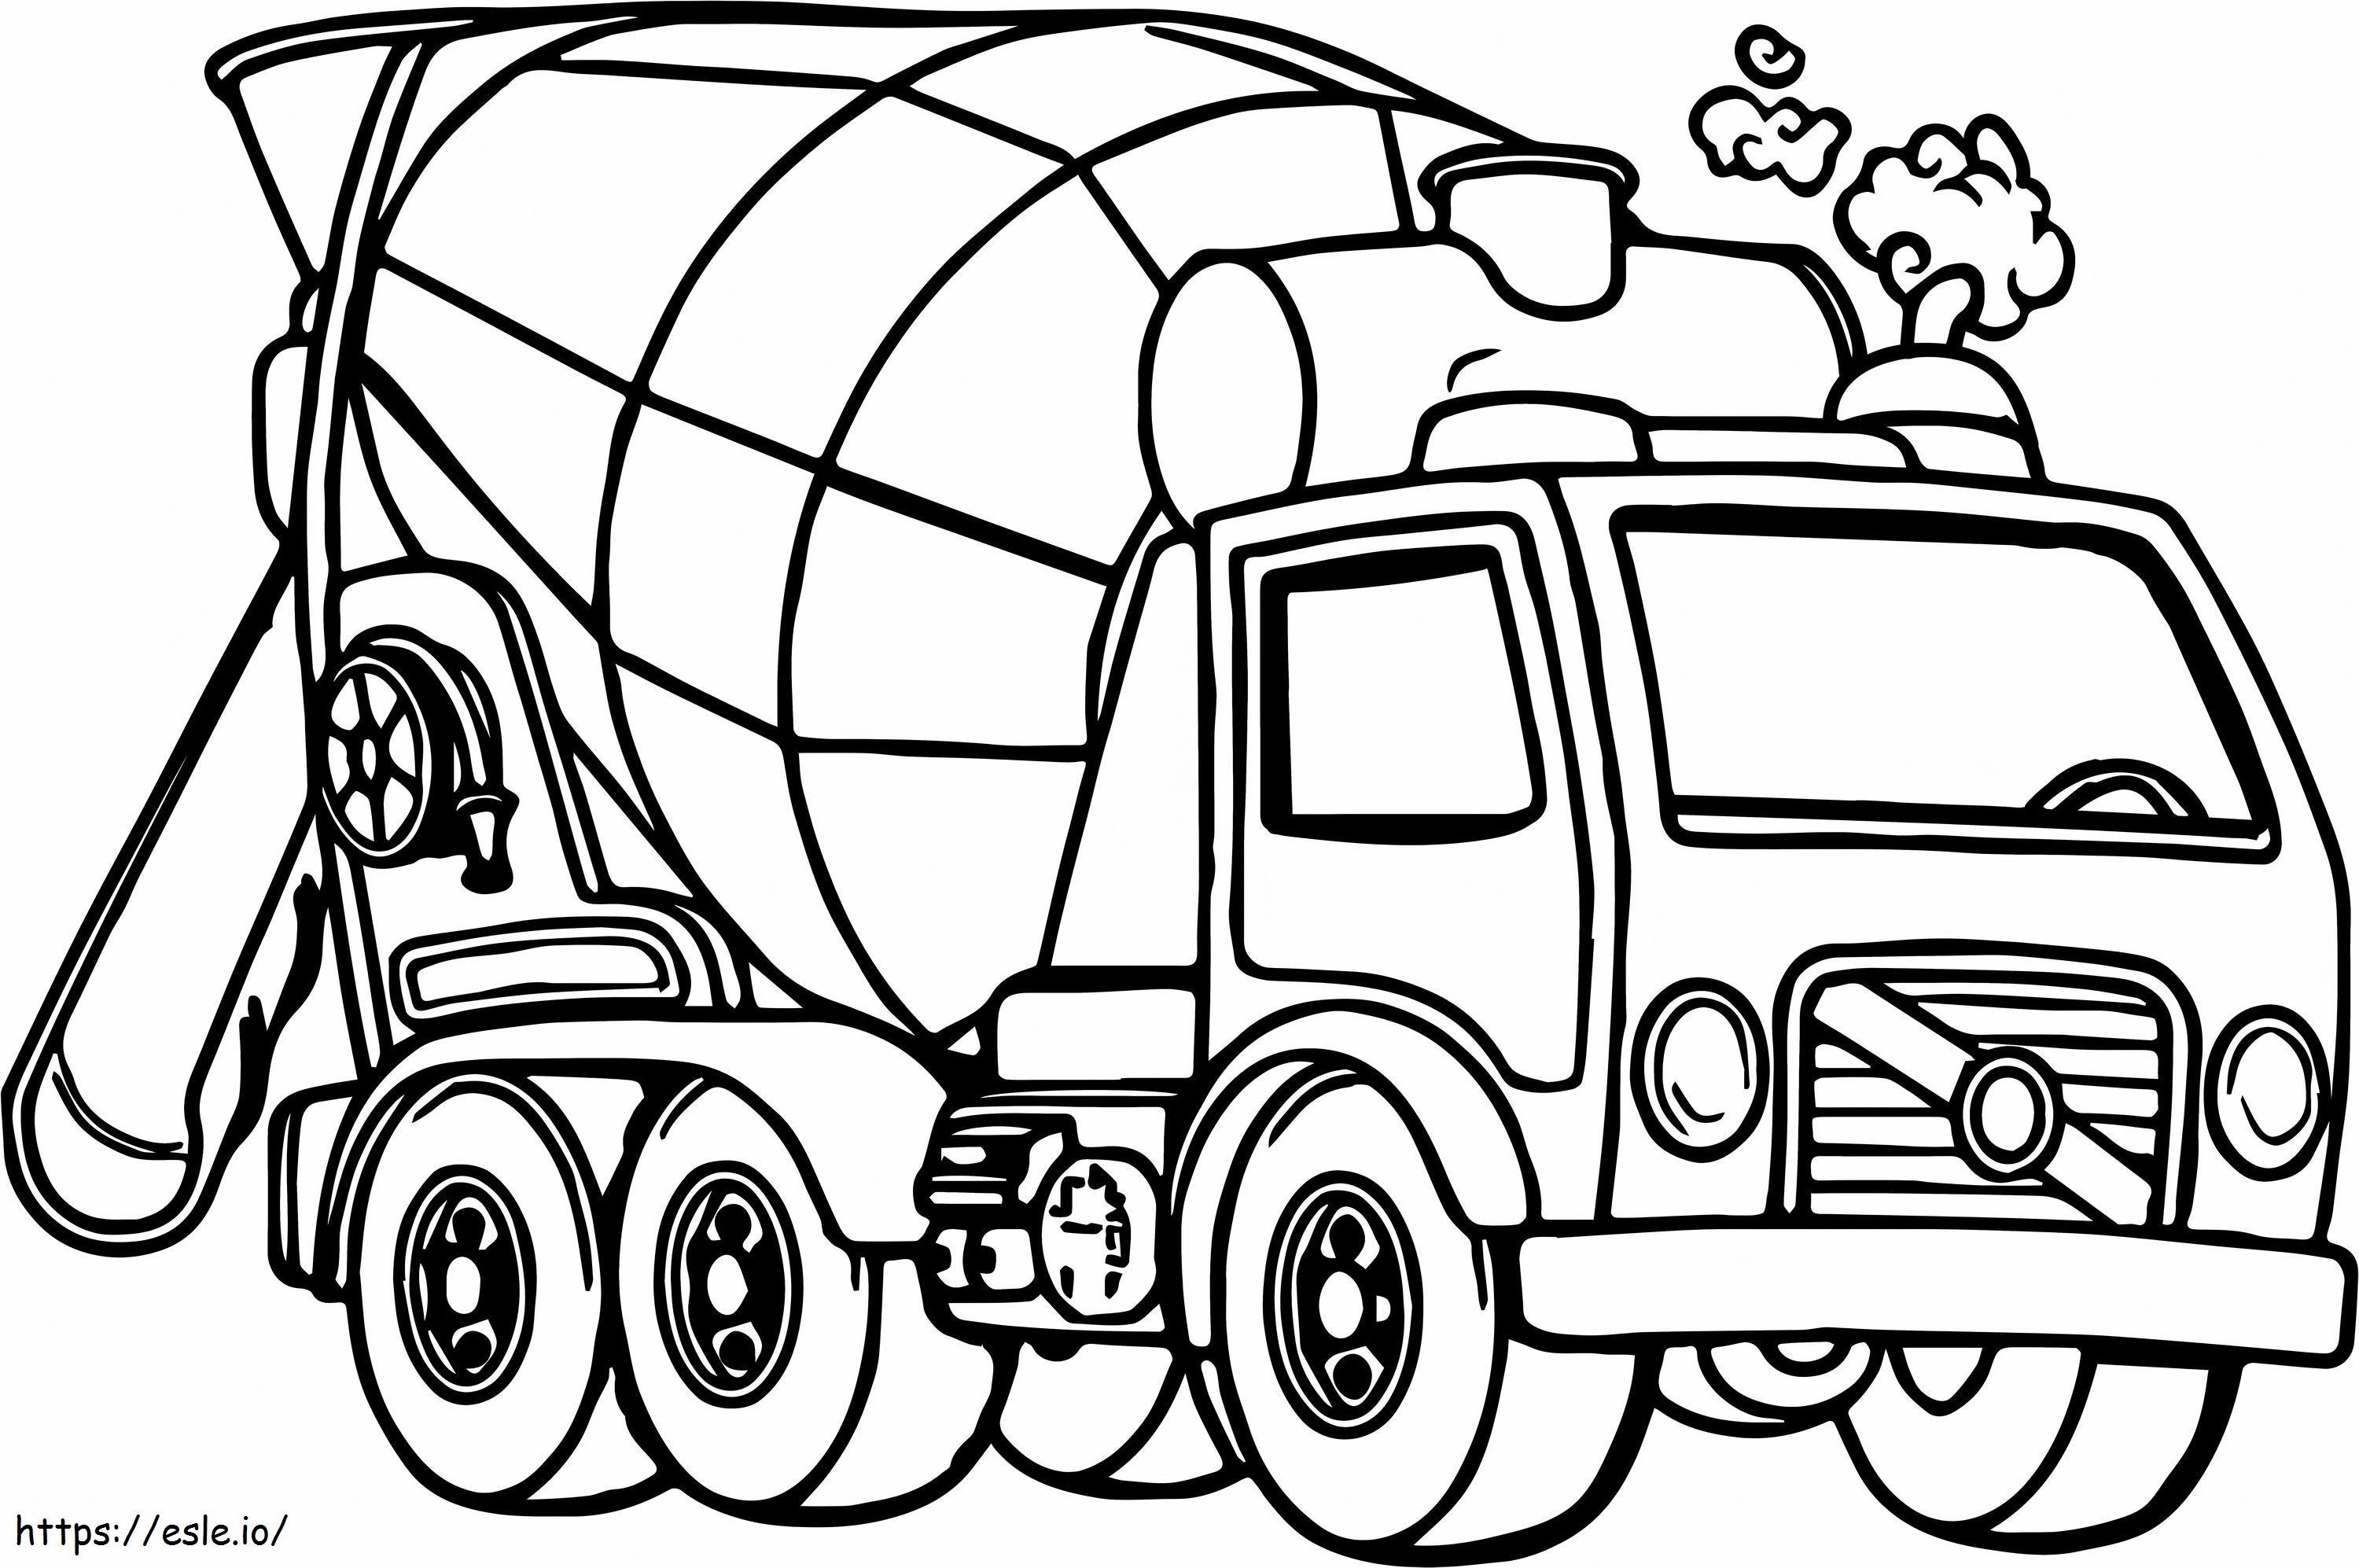 1543543841 Cementmixervrachtwagen 3 R Volwassen betonvrachtwagen 18 I Goede cementvrachtwagen kleurplaat kleurplaat